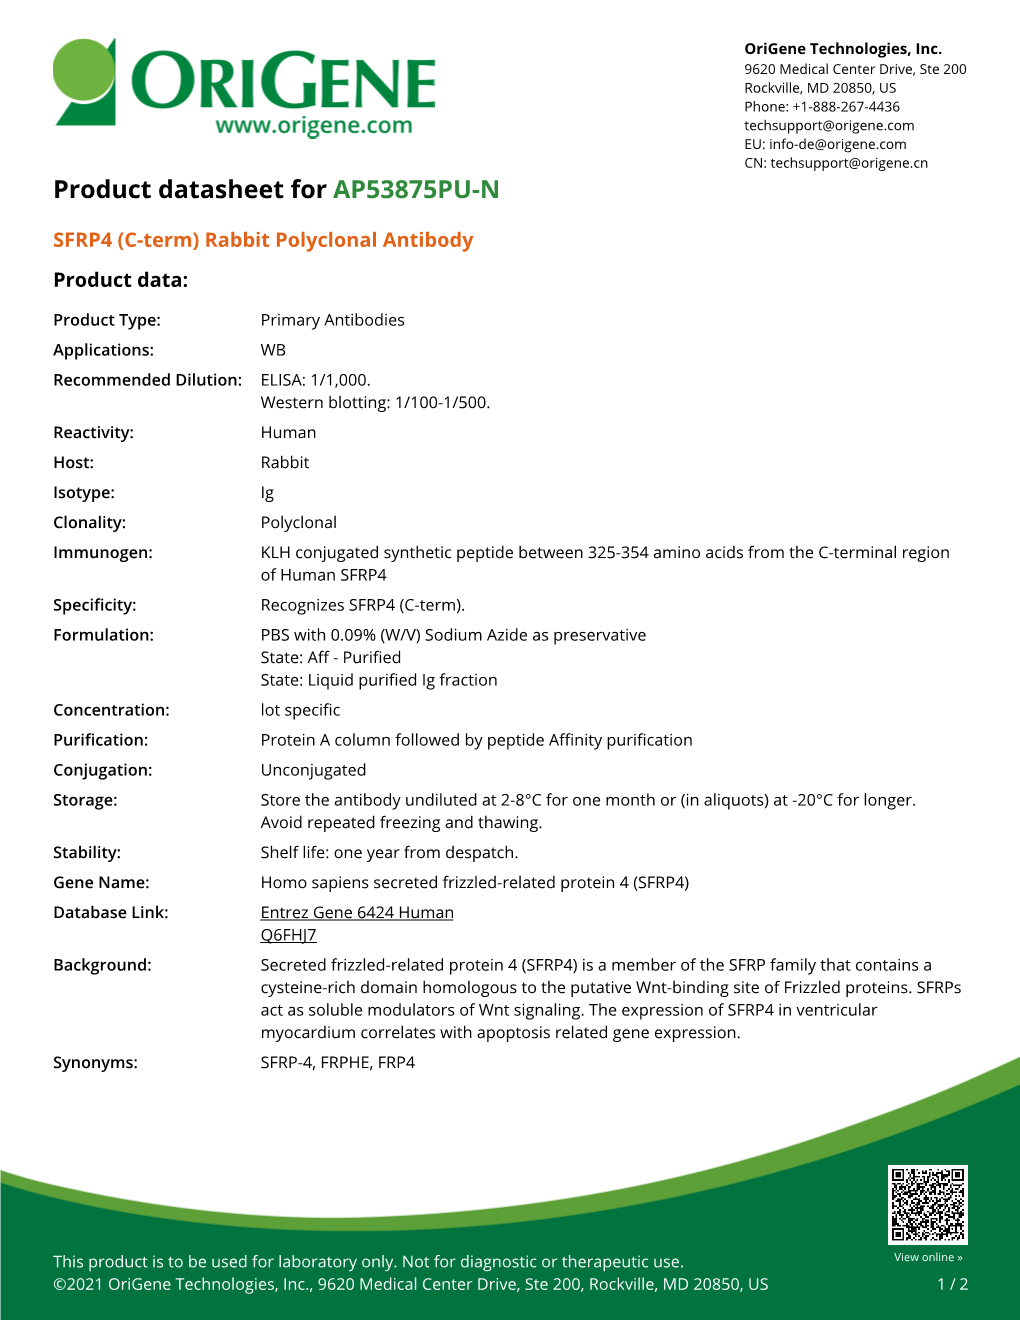 SFRP4 (C-Term) Rabbit Polyclonal Antibody Product Data